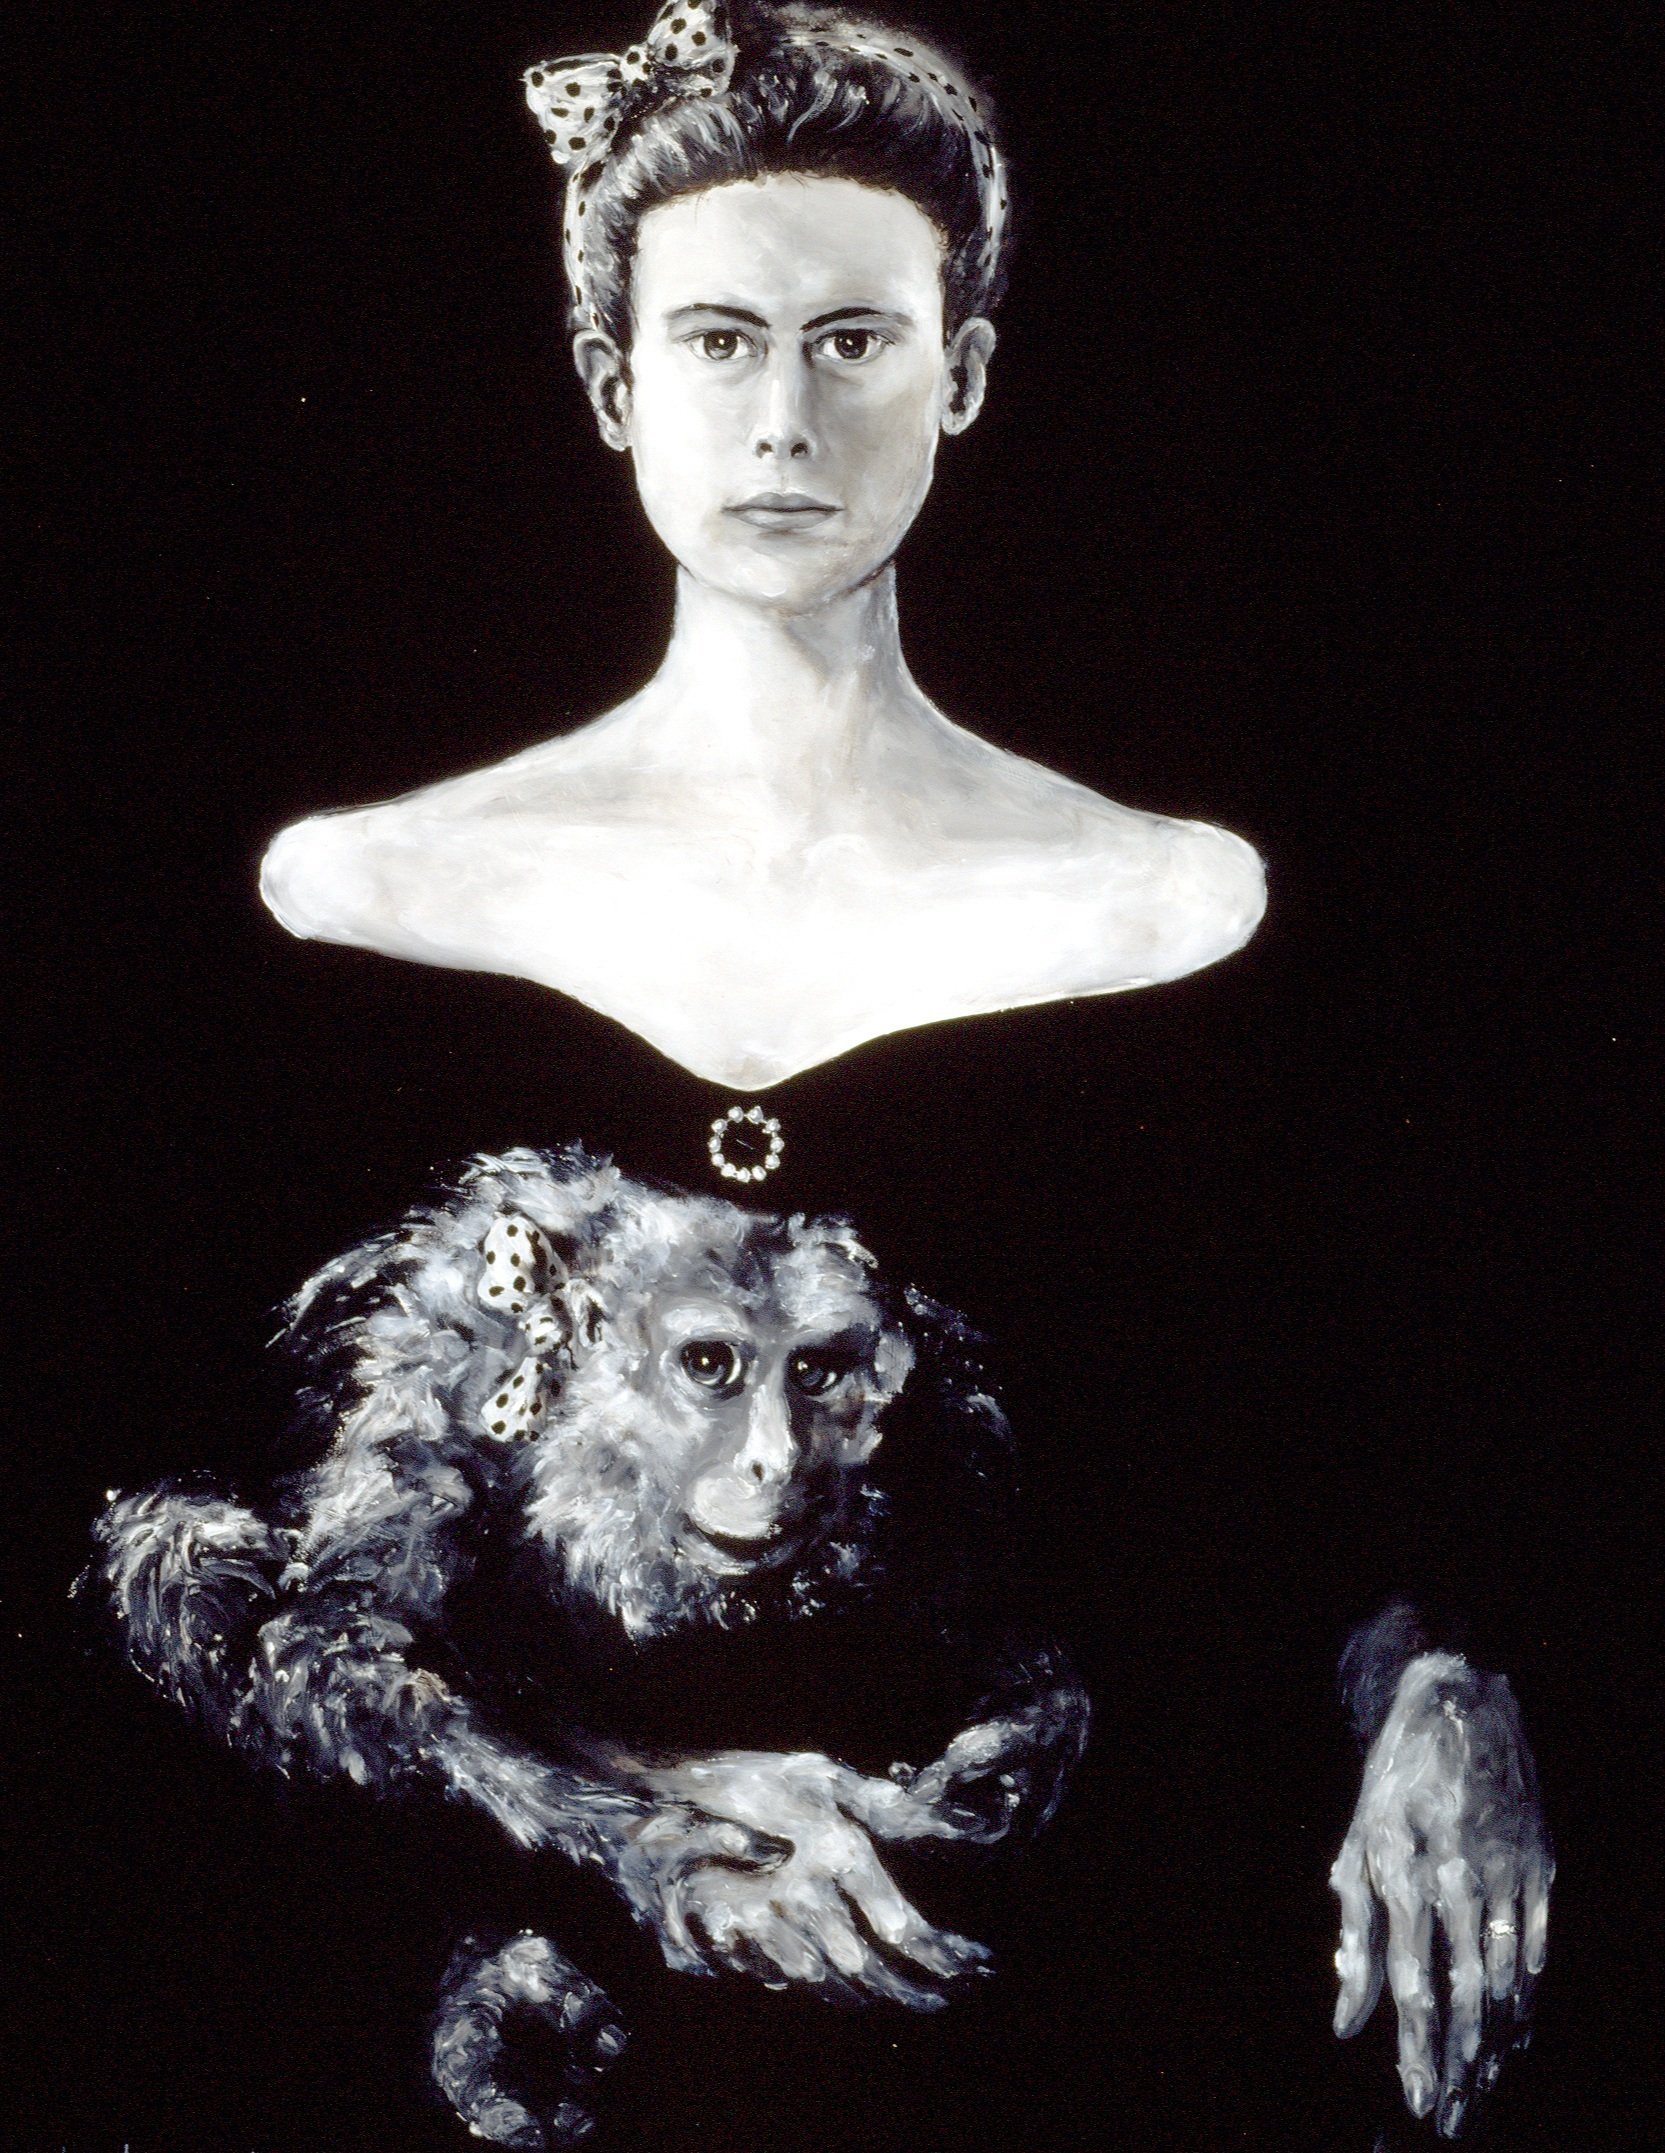 Self Portrait with Monkey